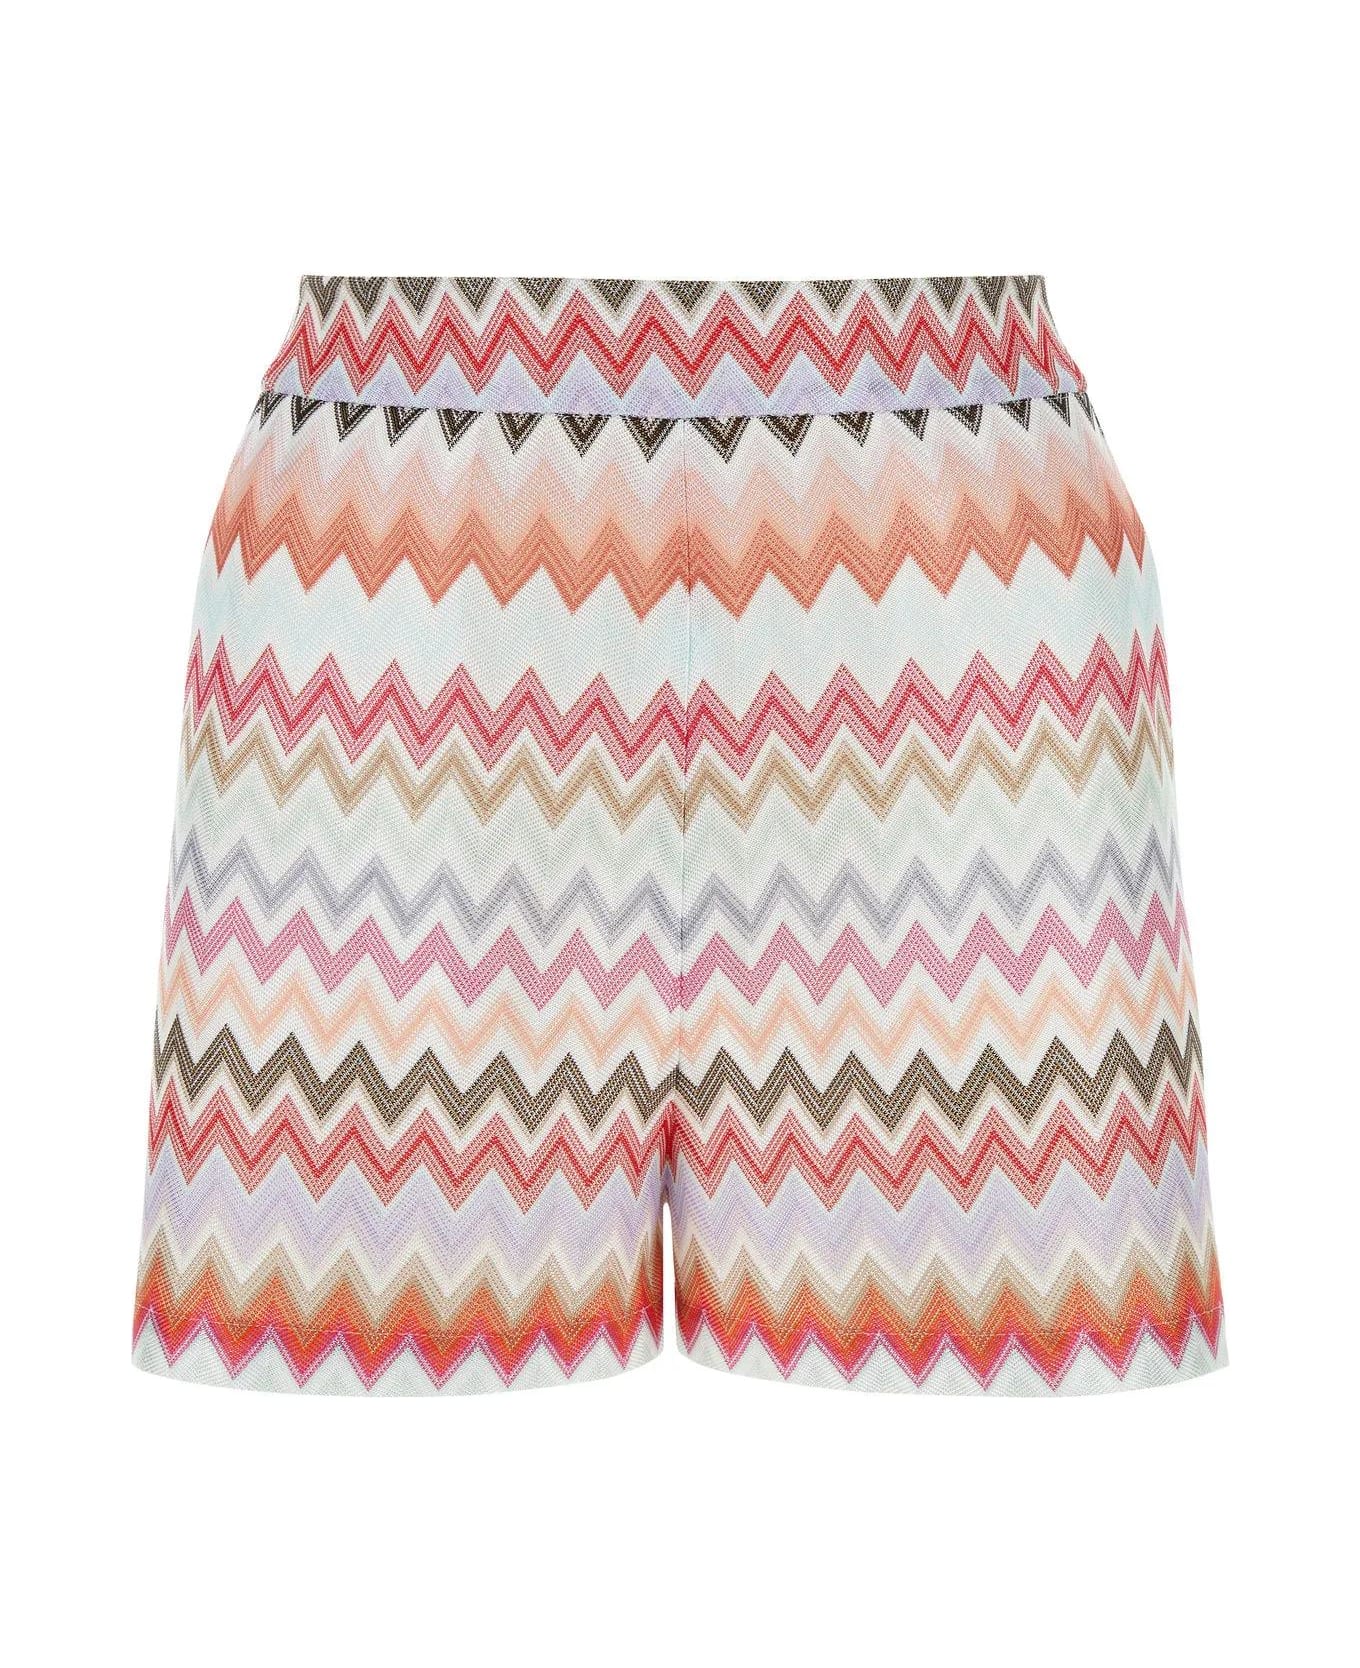 Missoni Embroidered Cotton Blend Shorts - Multicolore ショートパンツ